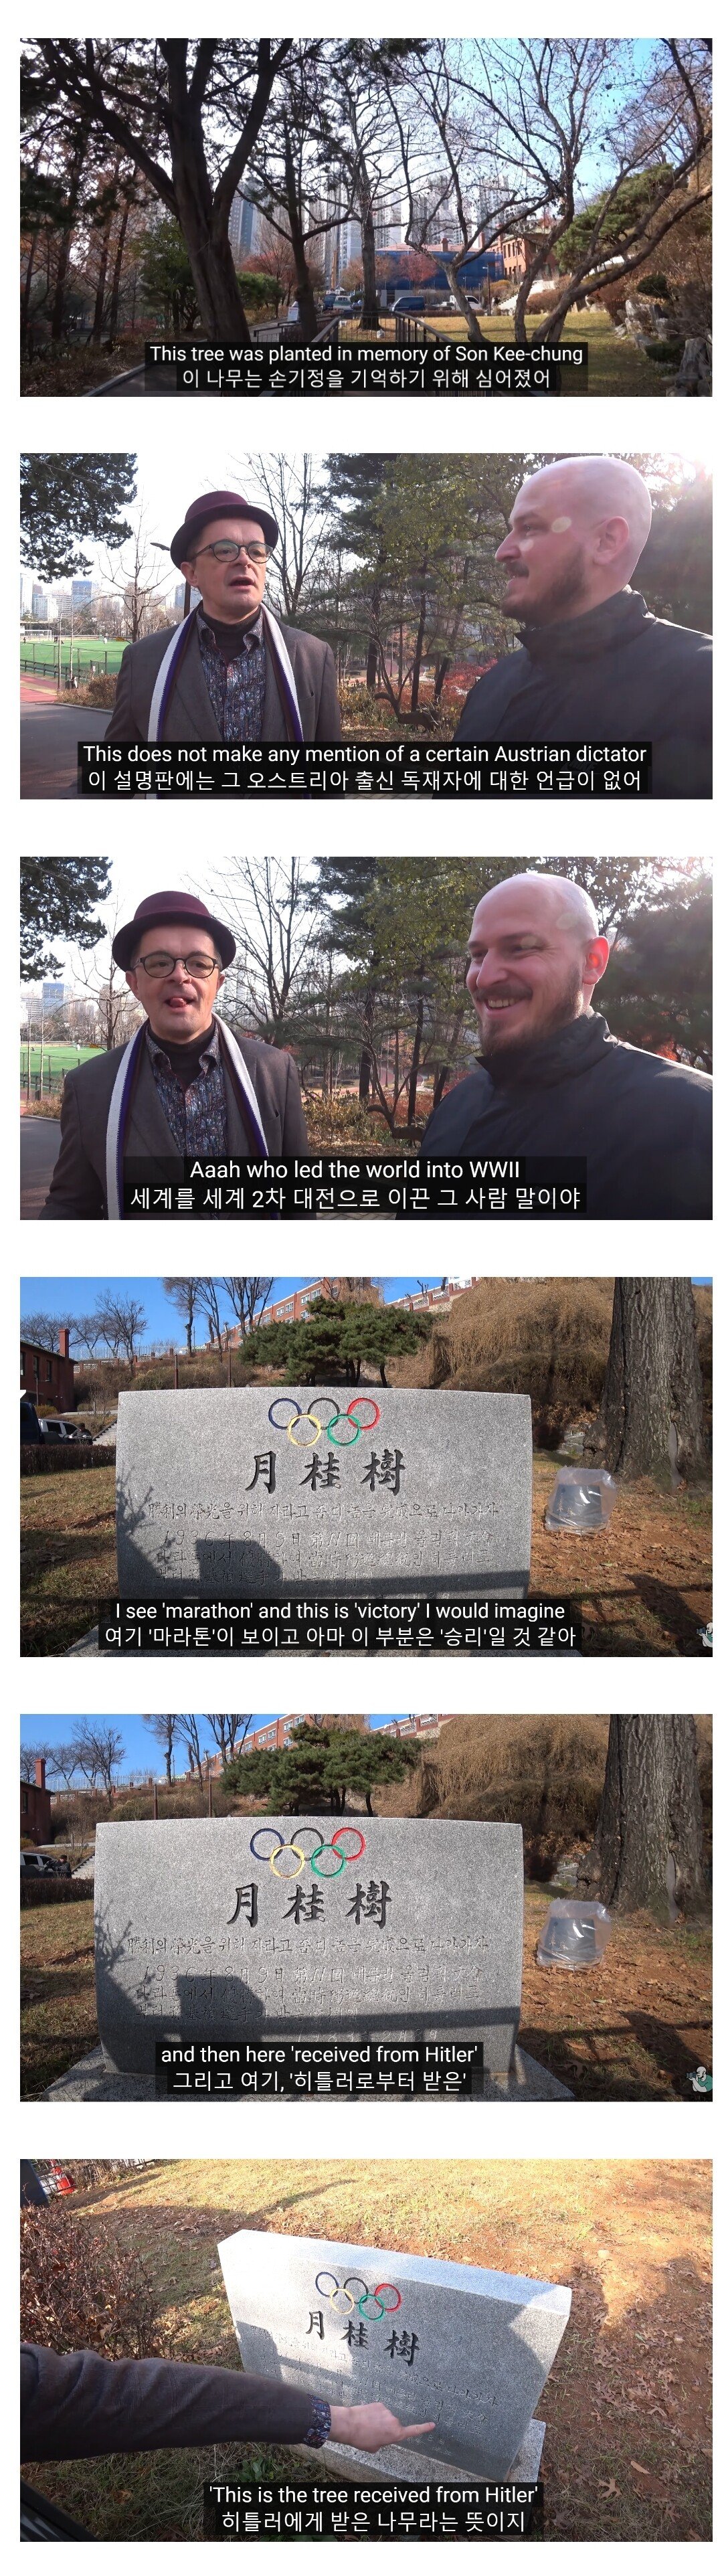 의외로 한국에 있는 히틀러가 준 나무.jpg